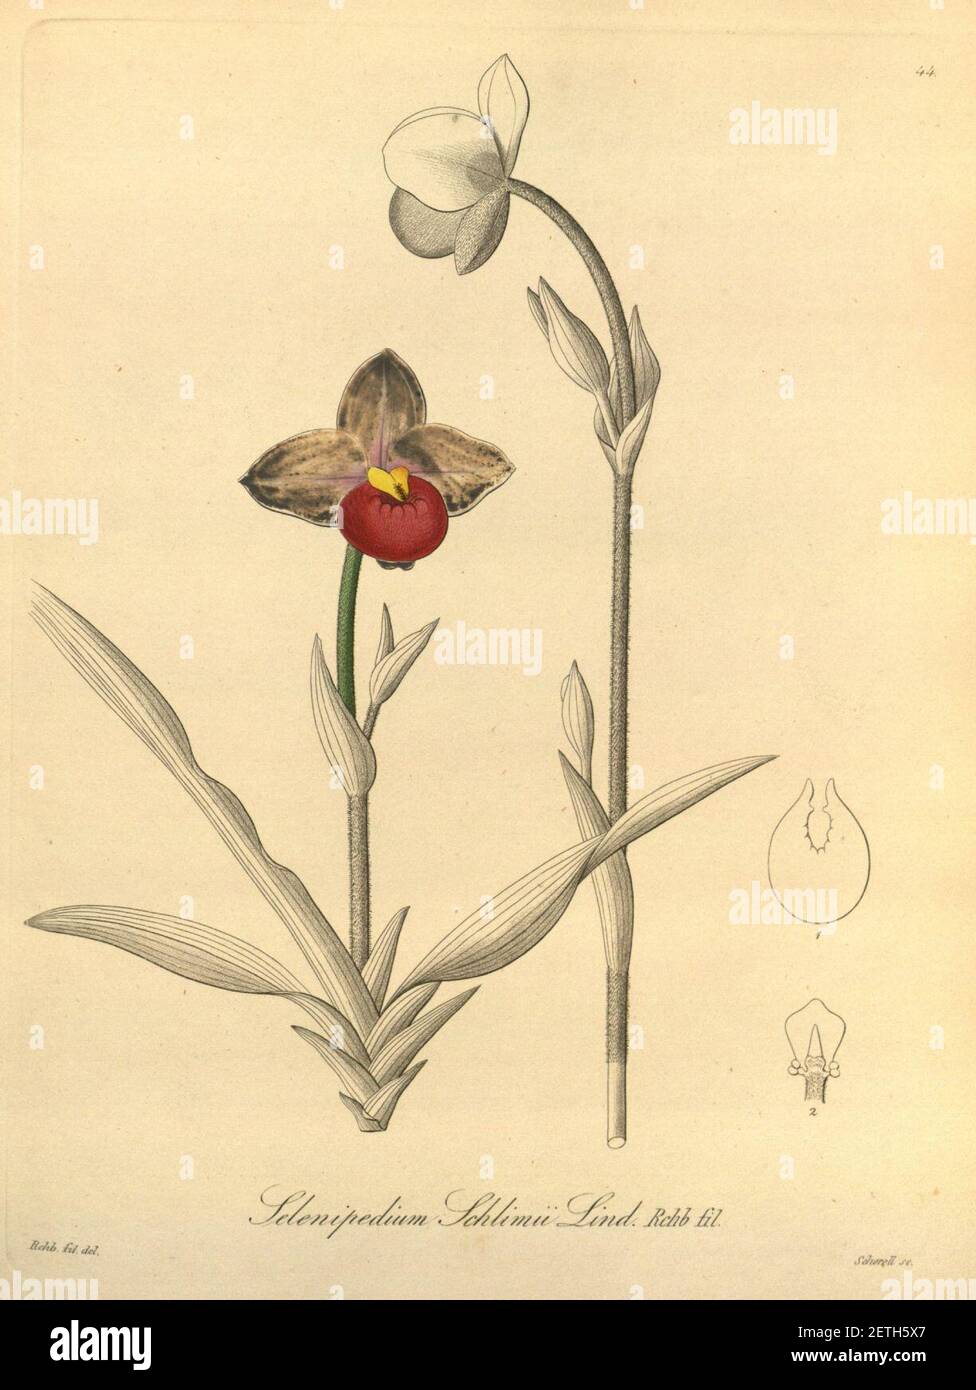 Phragmipedium schlimii (as Selenipedium schlimii)-Xenia 1-44 (1858). Stock Photo